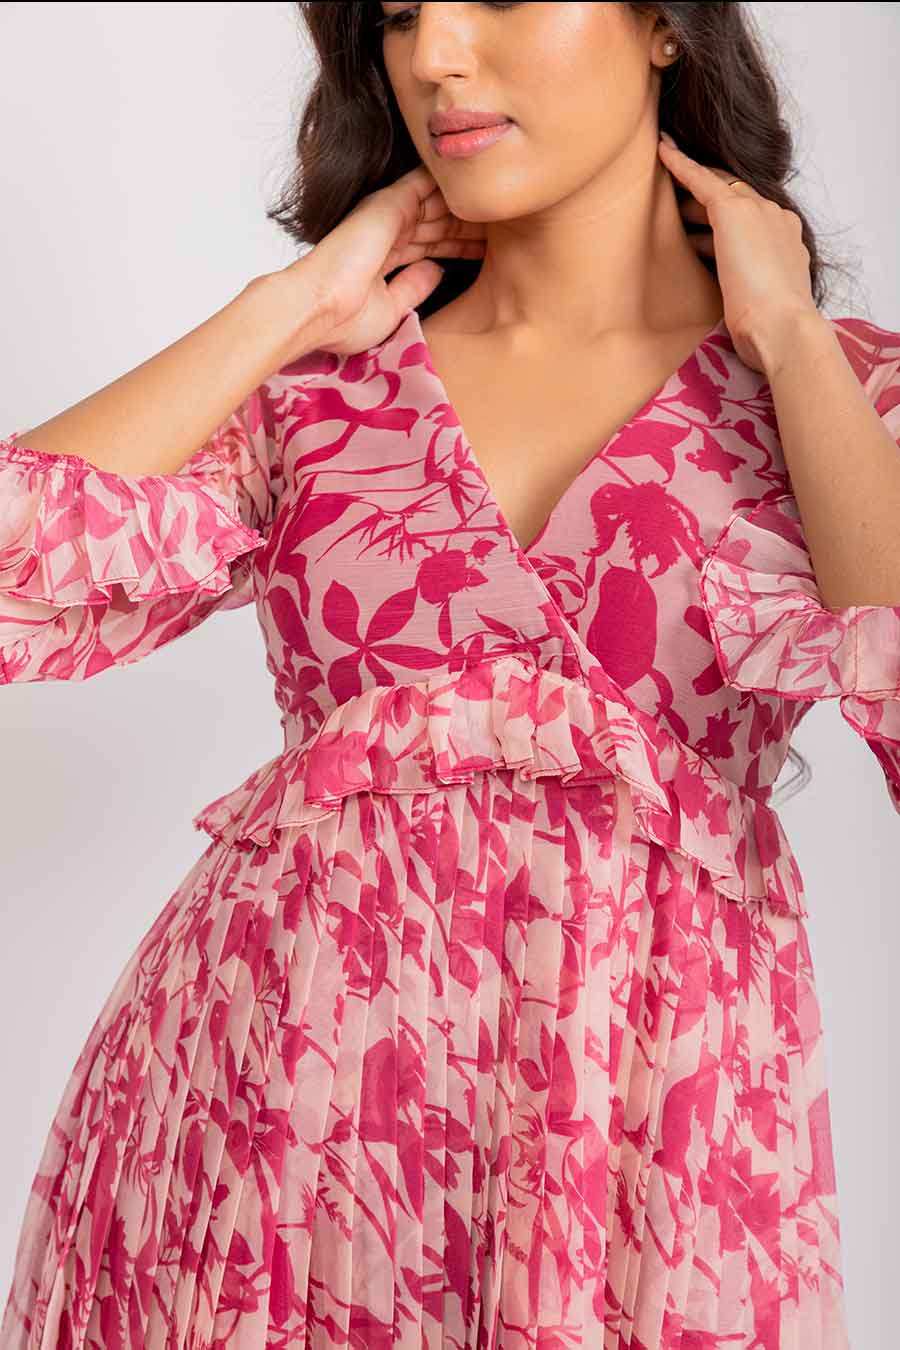 Michelle Pink Chiffon Pleated Maxi Dress